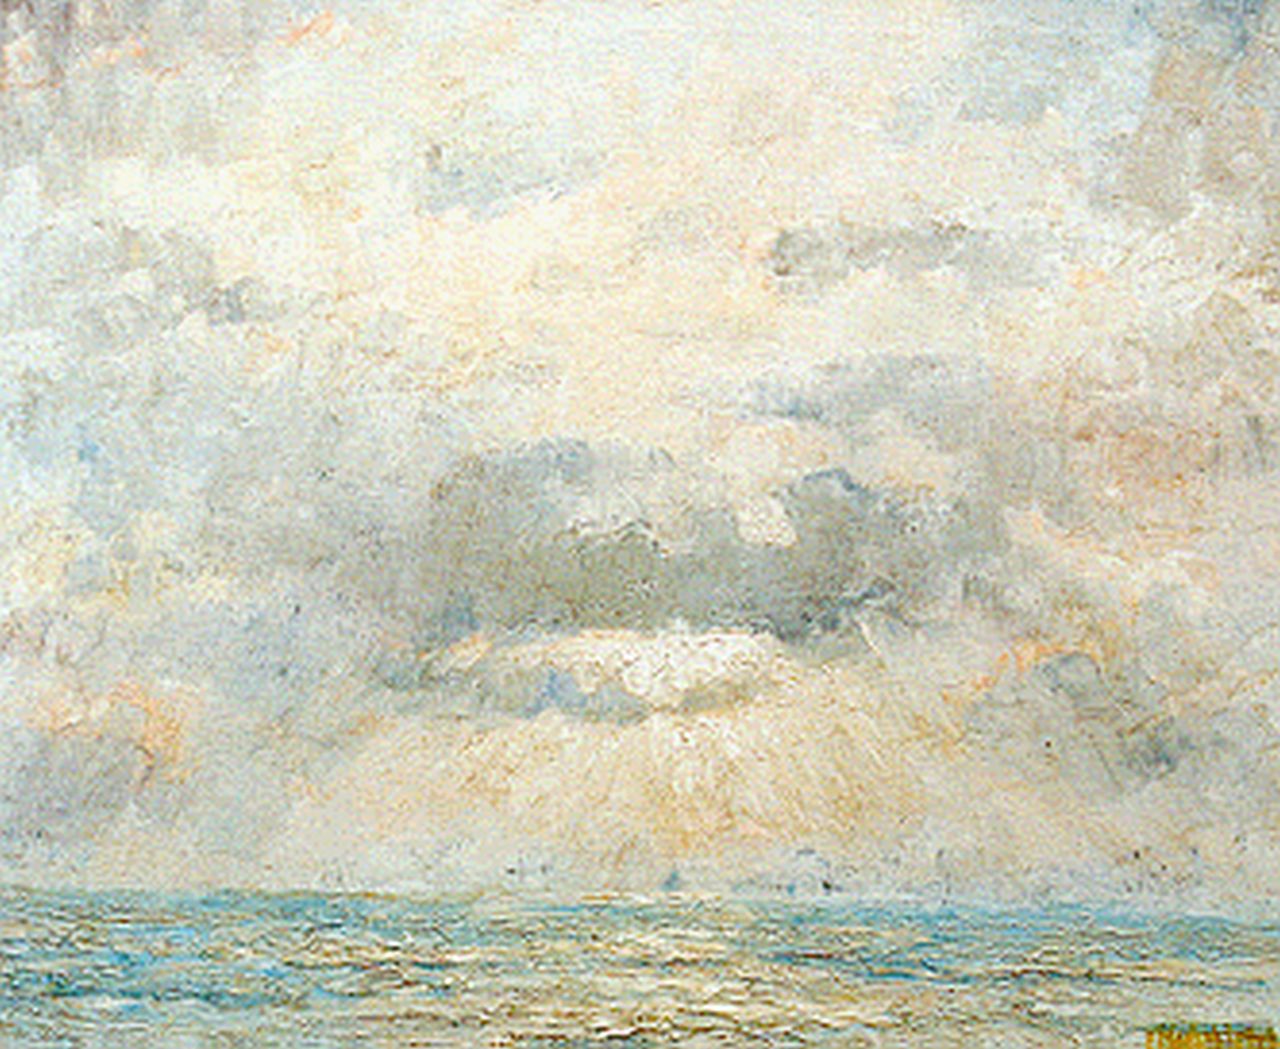 Mansvelt Beck P.E.A.  | Pieter Engelbertus Adrianus Mansvelt Beck, Avondlucht boven zee, olieverf op doek 70,4 x 84,5 cm, gesigneerd rechtsonder